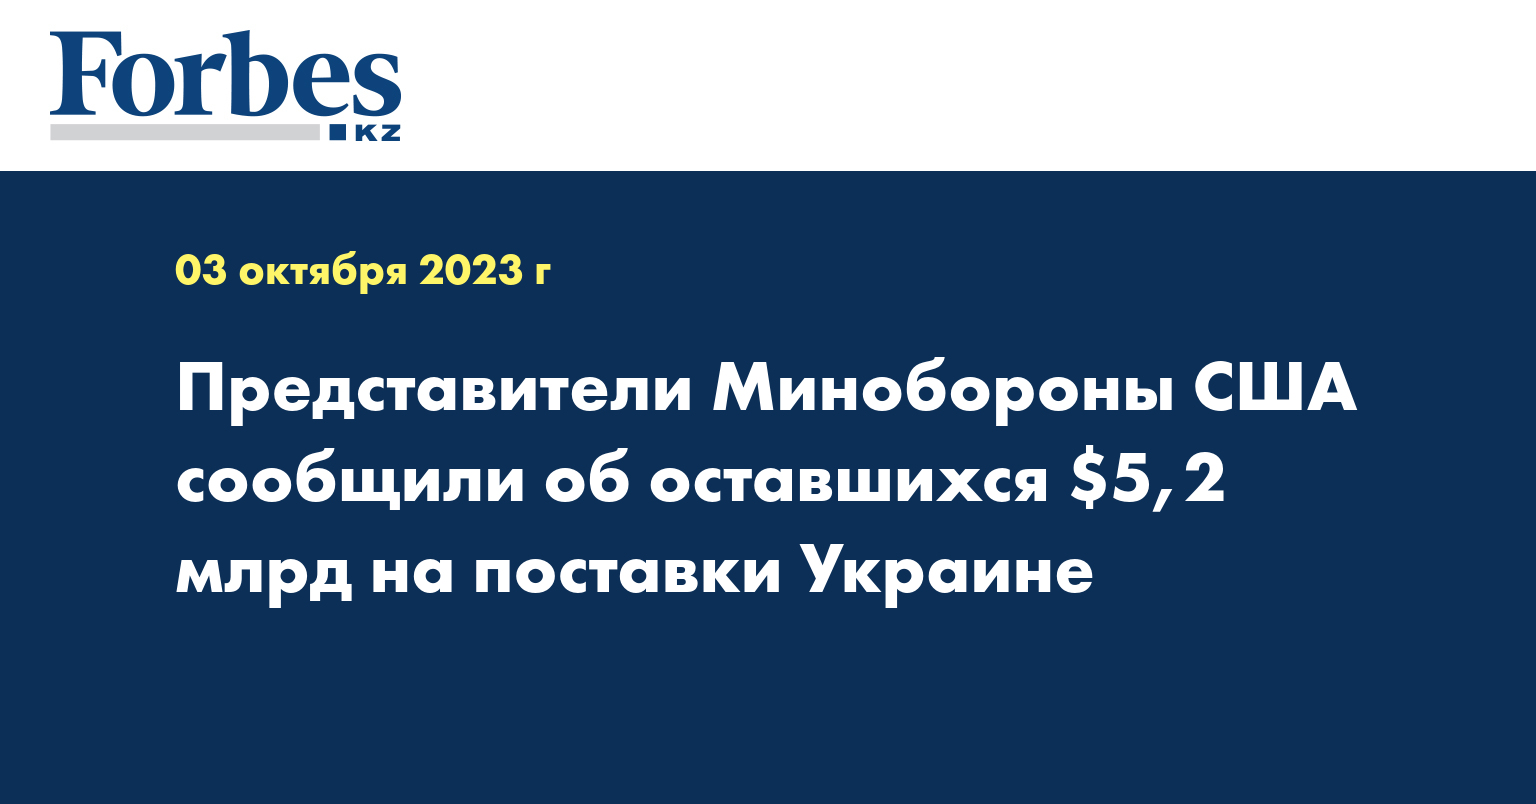 Представители Минобороны США сообщили об оставшихся $5,2 млрд на поставки Украине